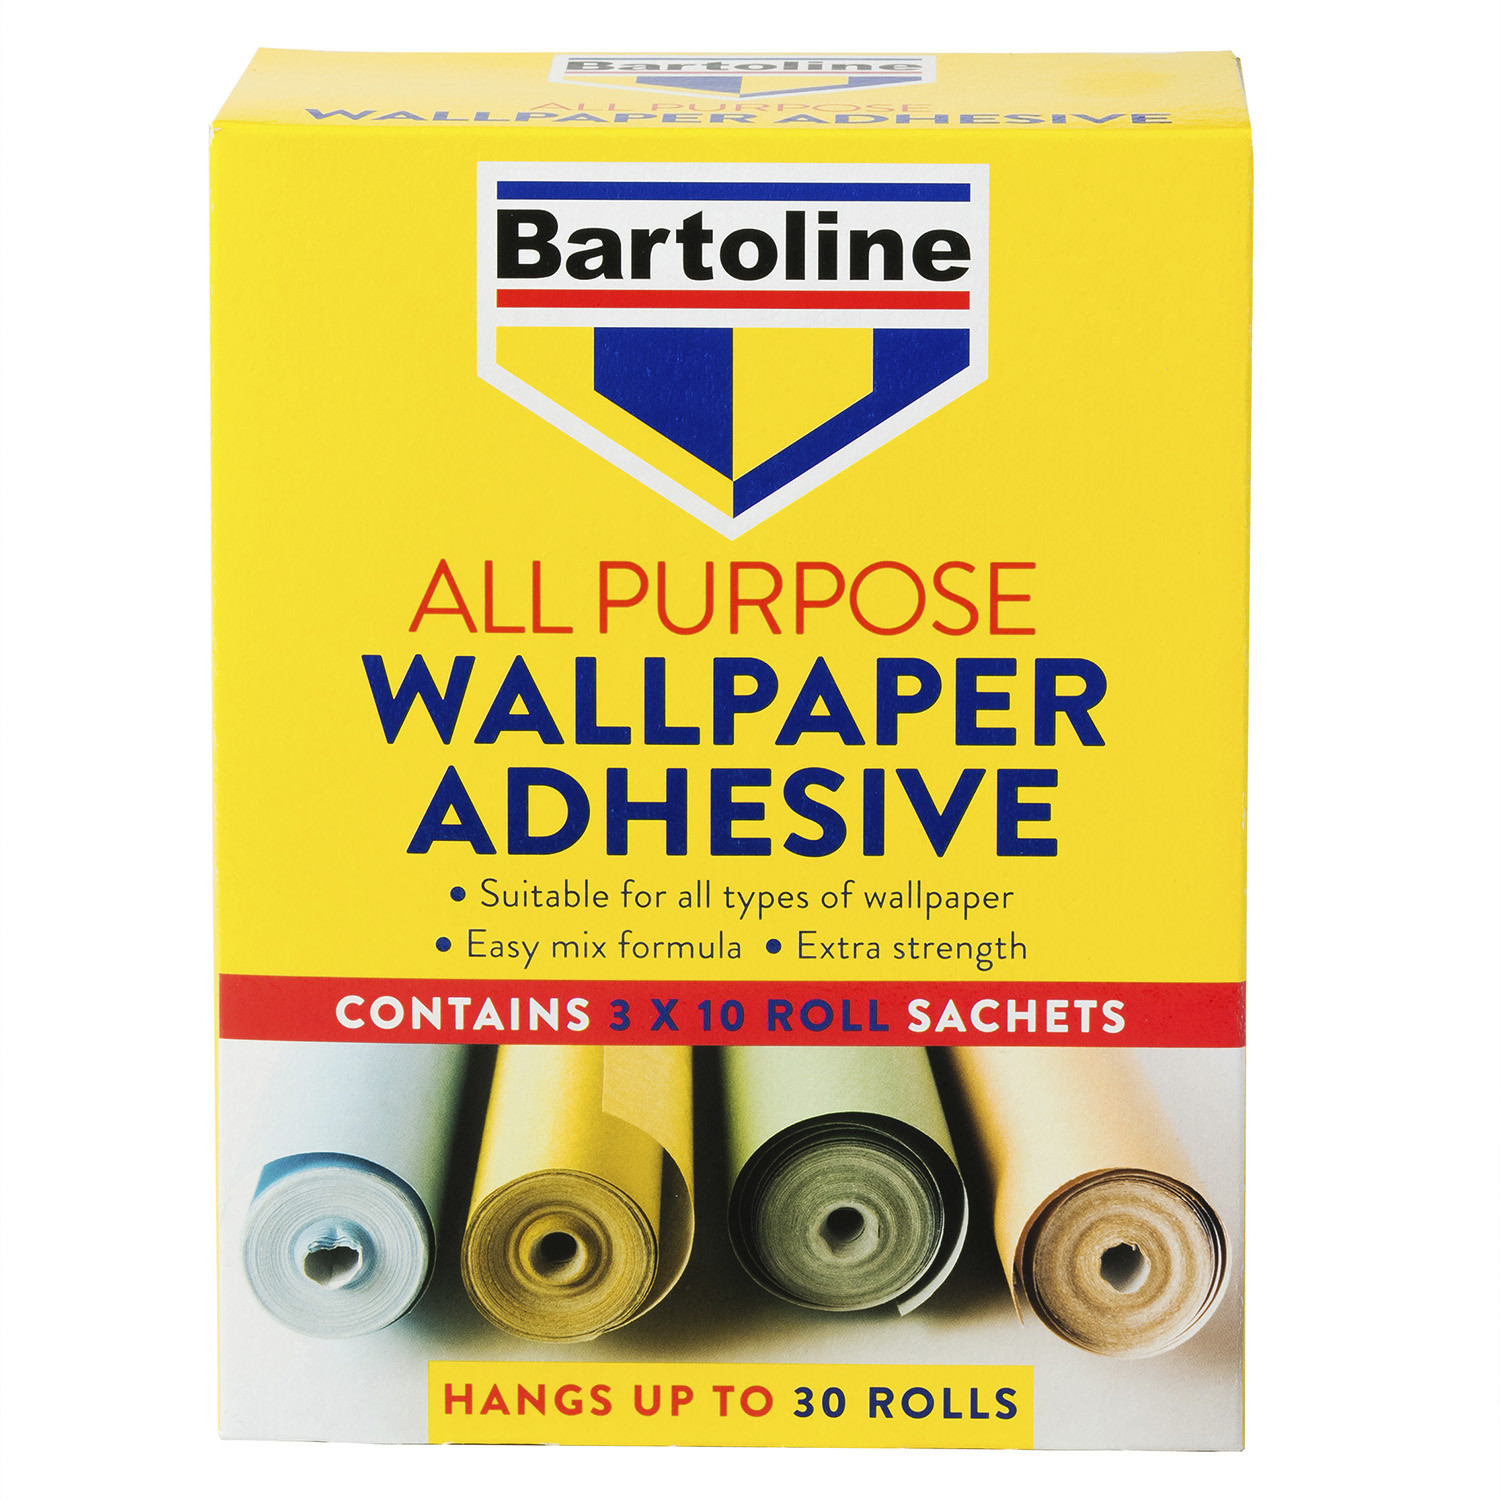 Bartoline All Purpose Wallpaper Adhesive Sachet 95g 30 Pack Image